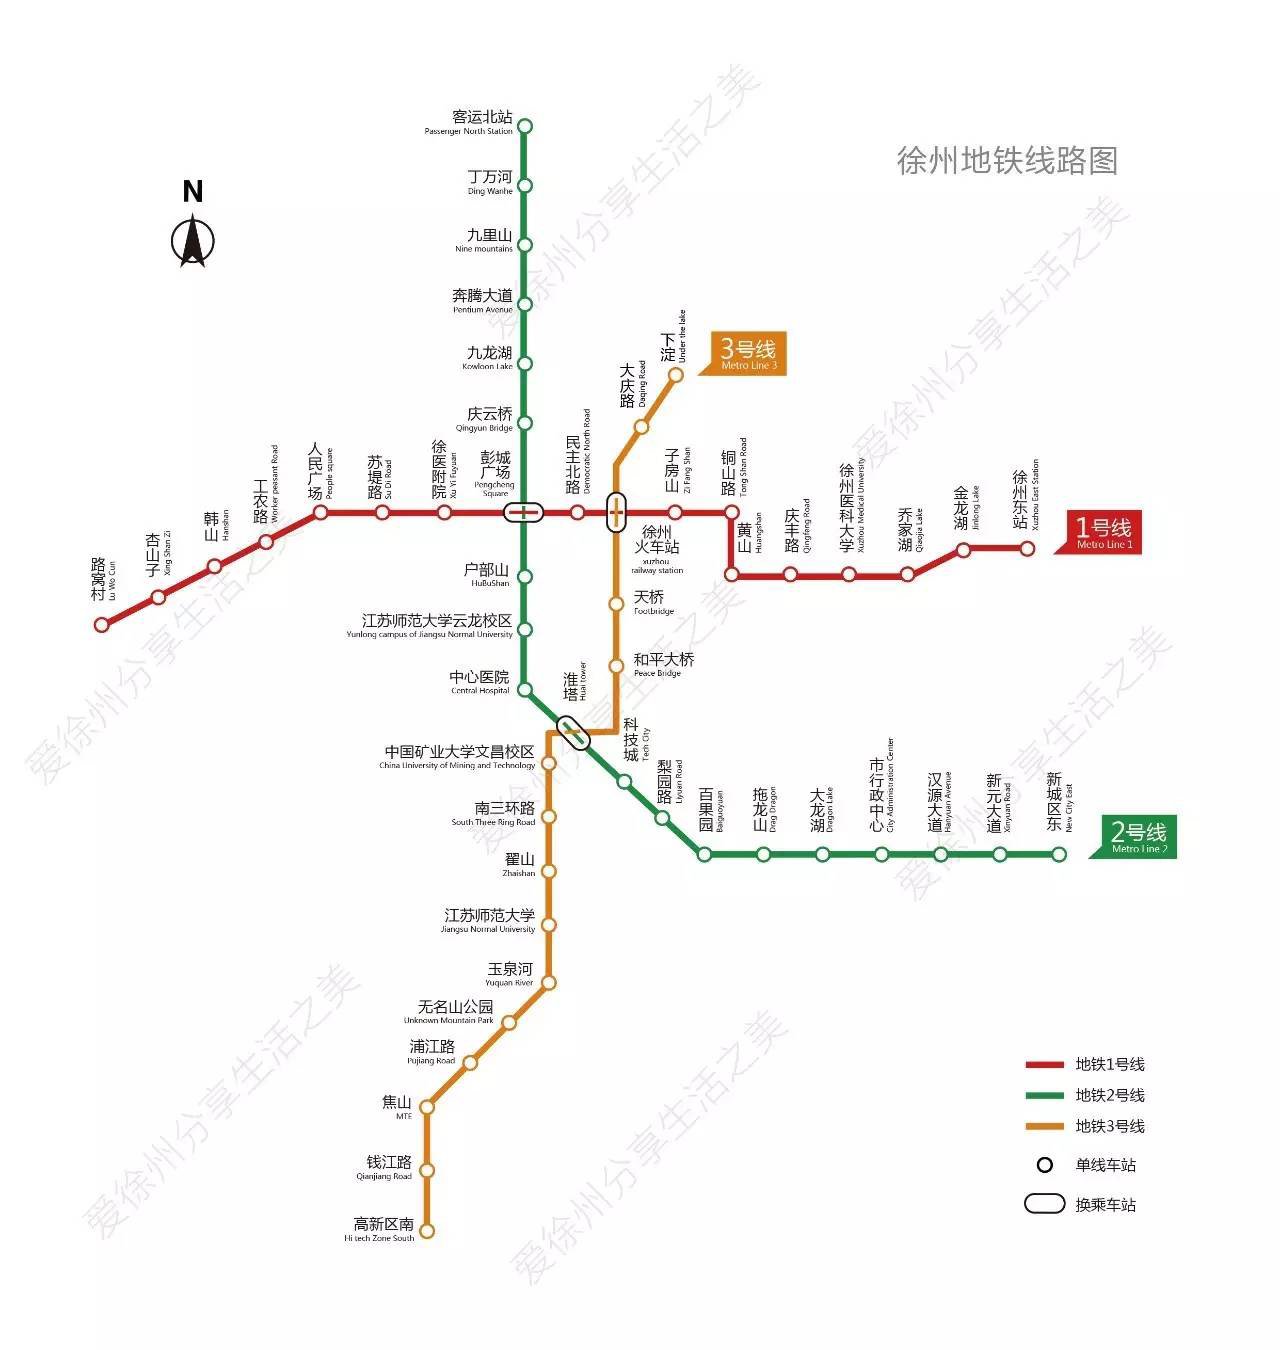 科有了地铁之后,不仅对徐州城市形象是进一步提升,而且对缓解交通压力